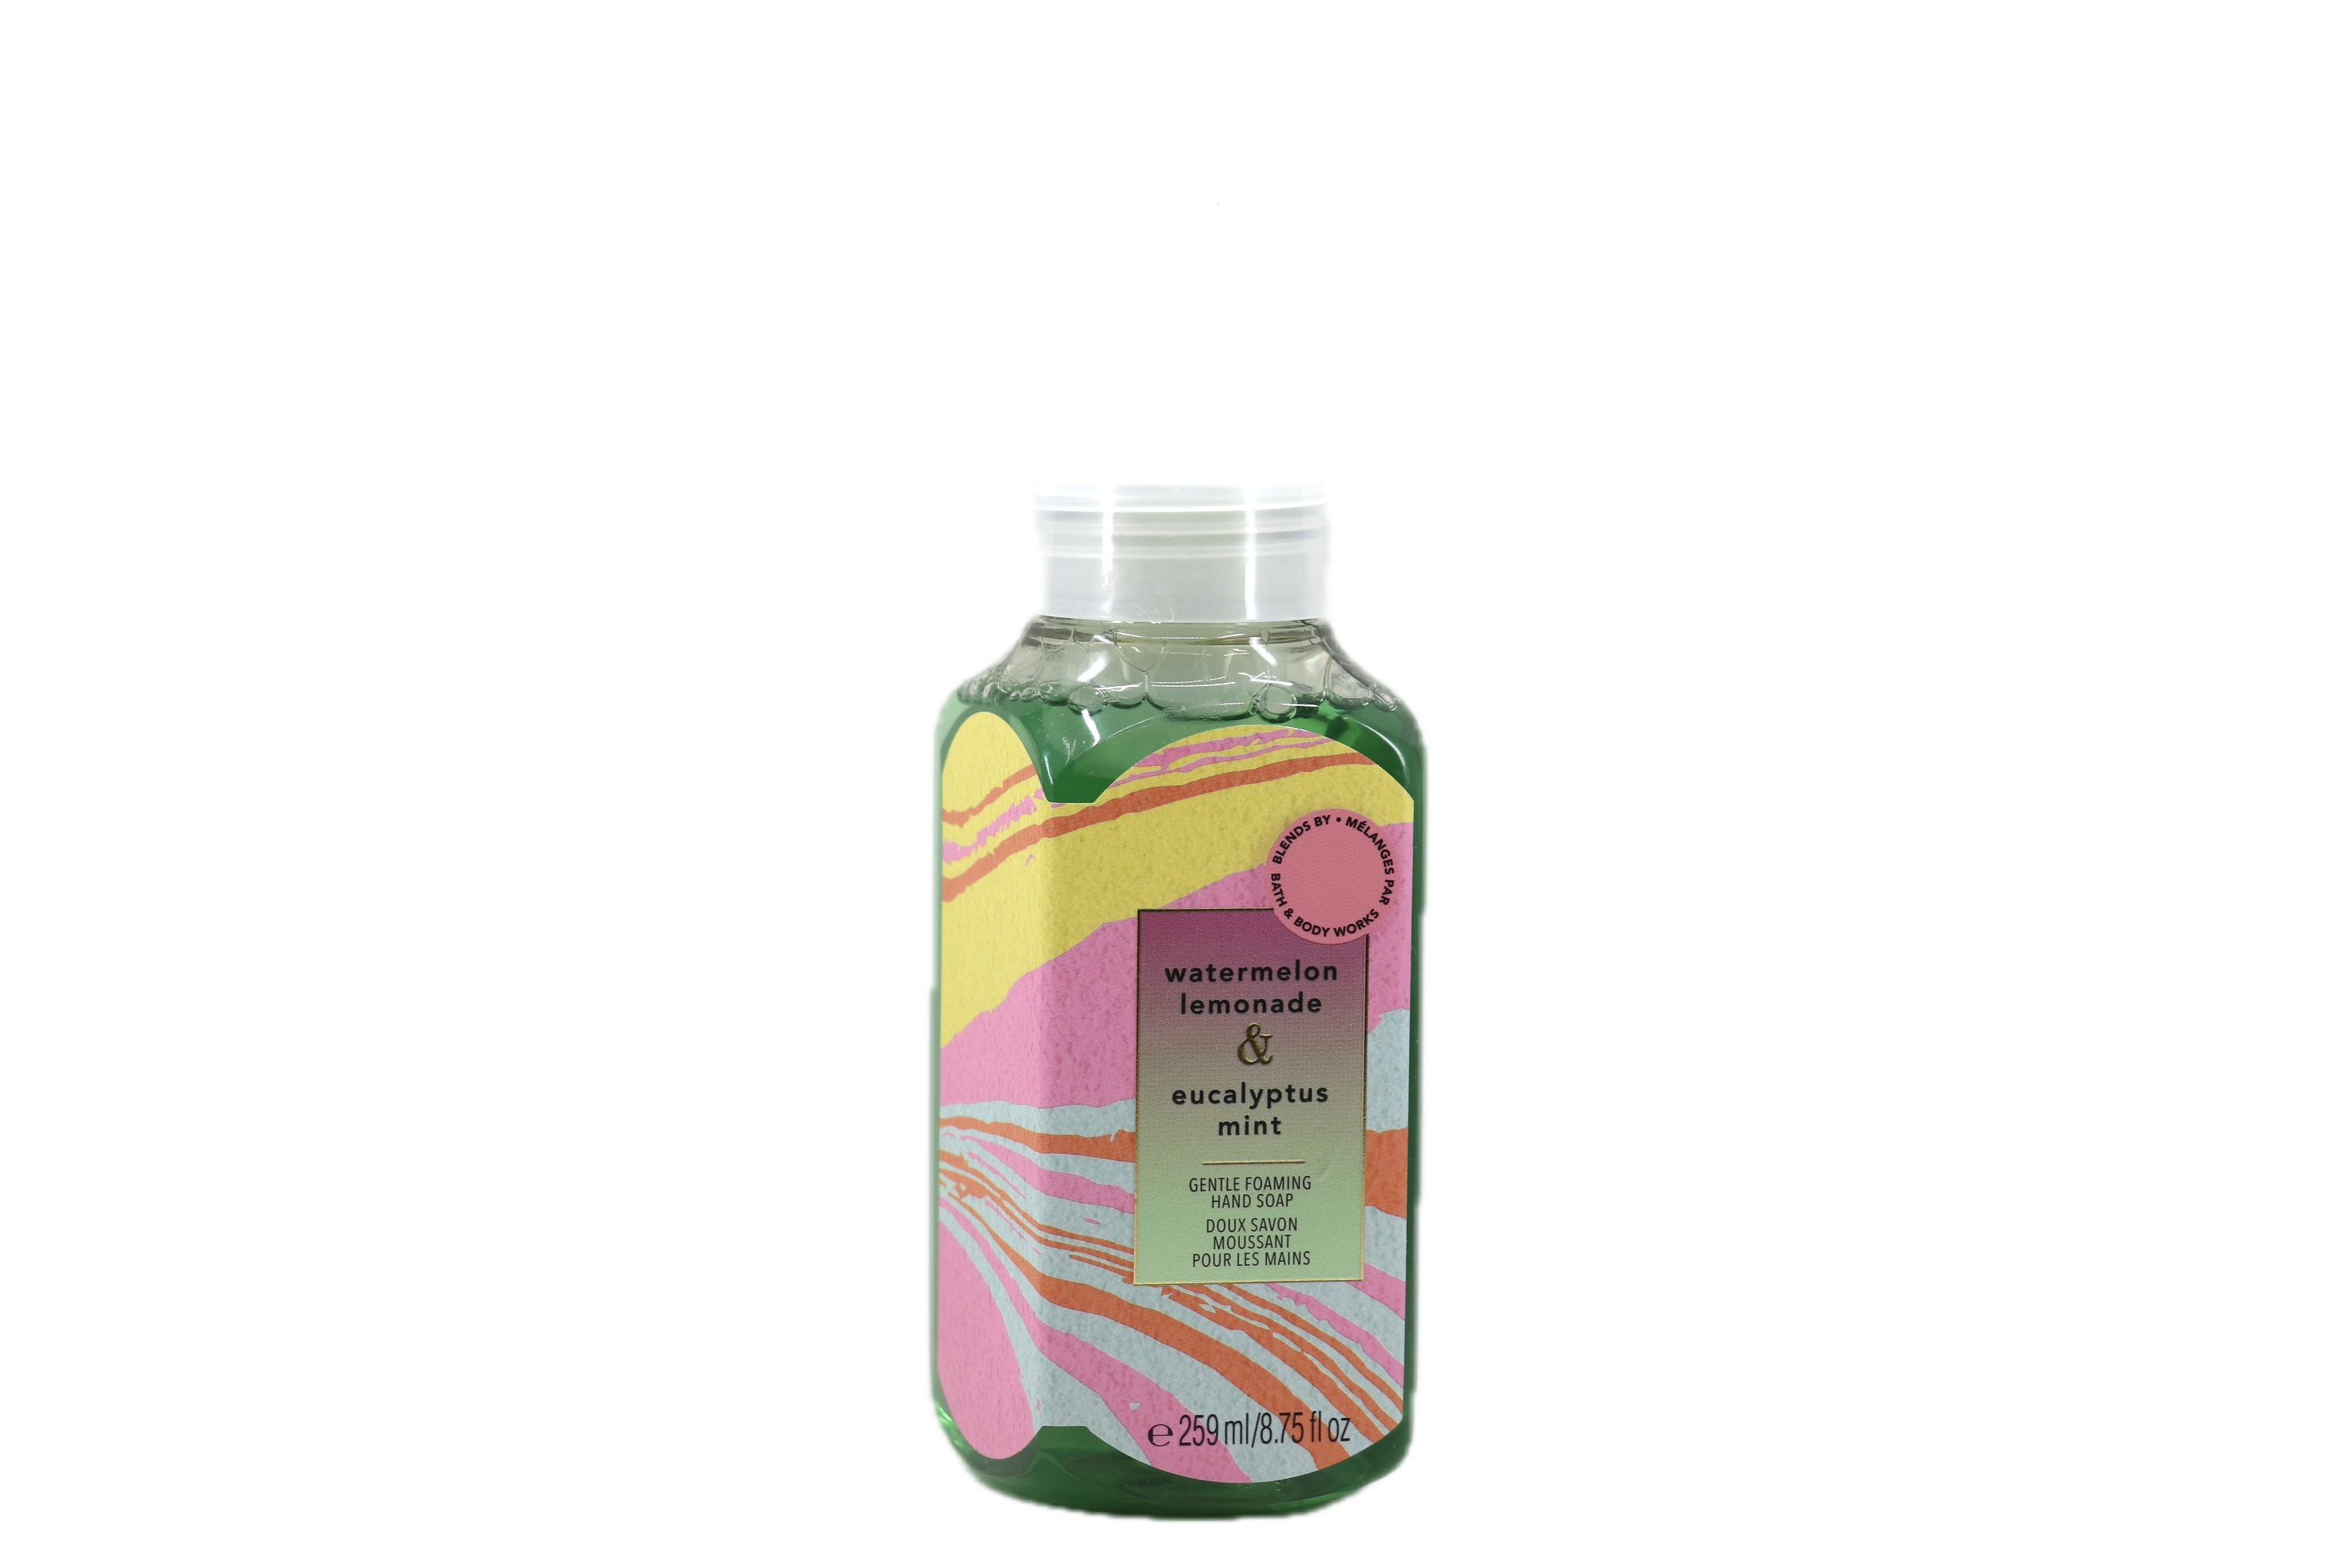 Bath & Body Works Watermelon Lemonade & Eucalyptus Mint Gentle Foaming Hand Soap